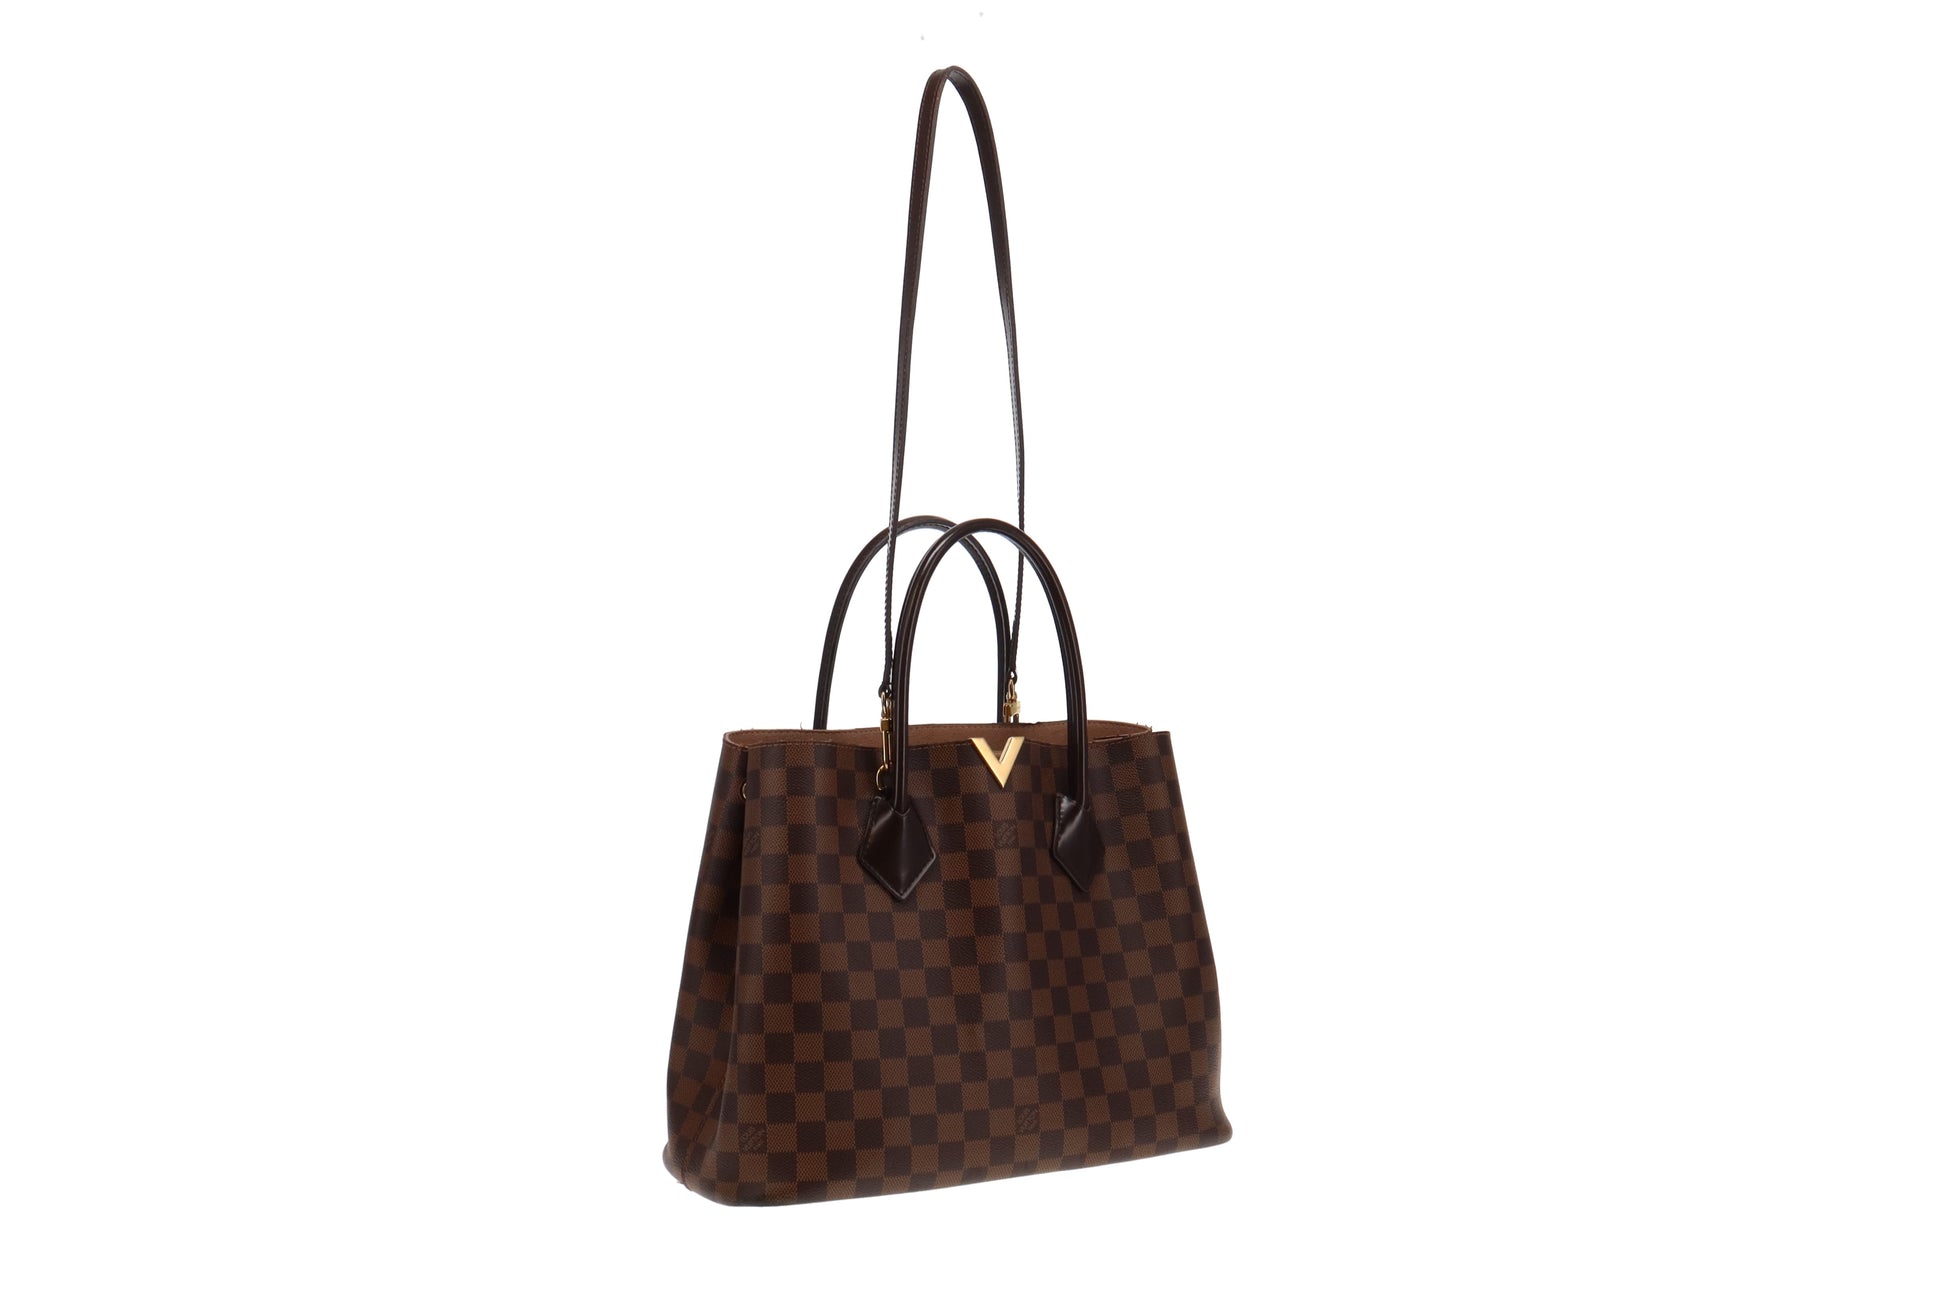 Authentic Louis Vuitton Damier Ebene Kensington Top Handle Bag w/ Strap